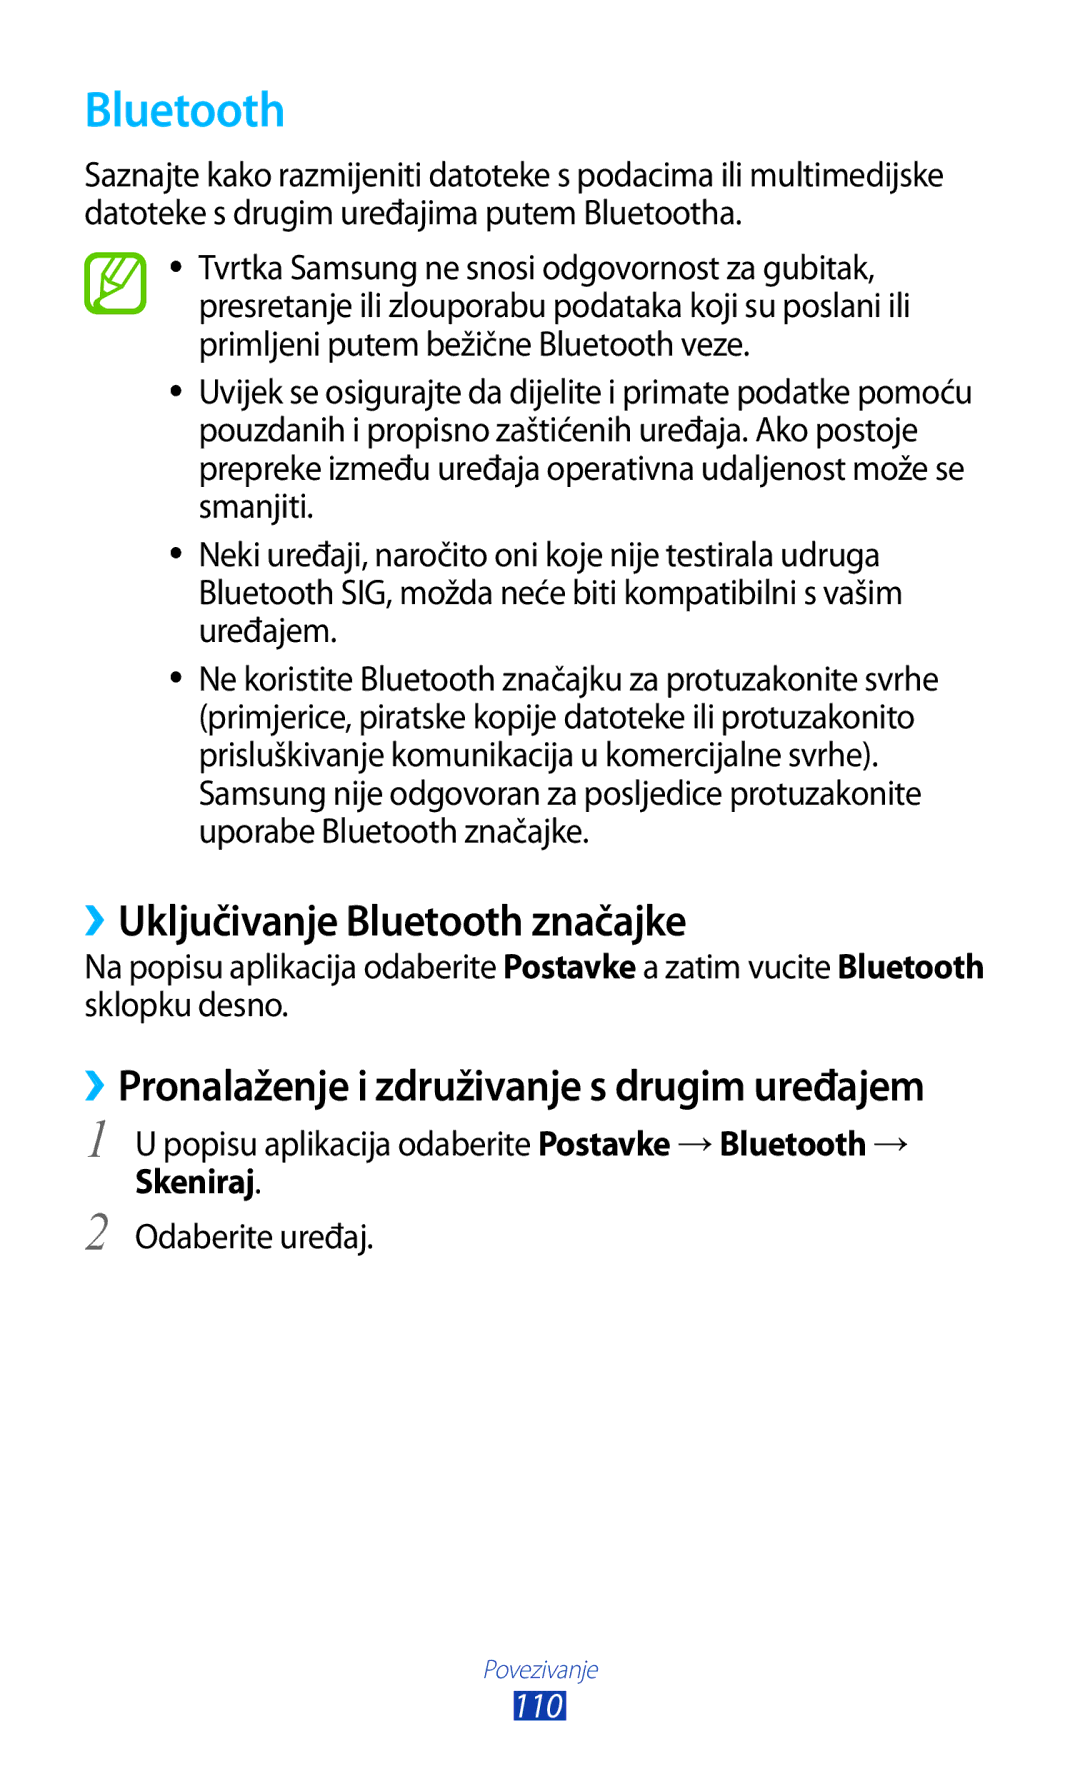 Samsung GT-S7562UWATSR ››Uključivanje Bluetooth značajke, ››Pronalaženje i združivanje s drugim uređajem, Skeniraj 